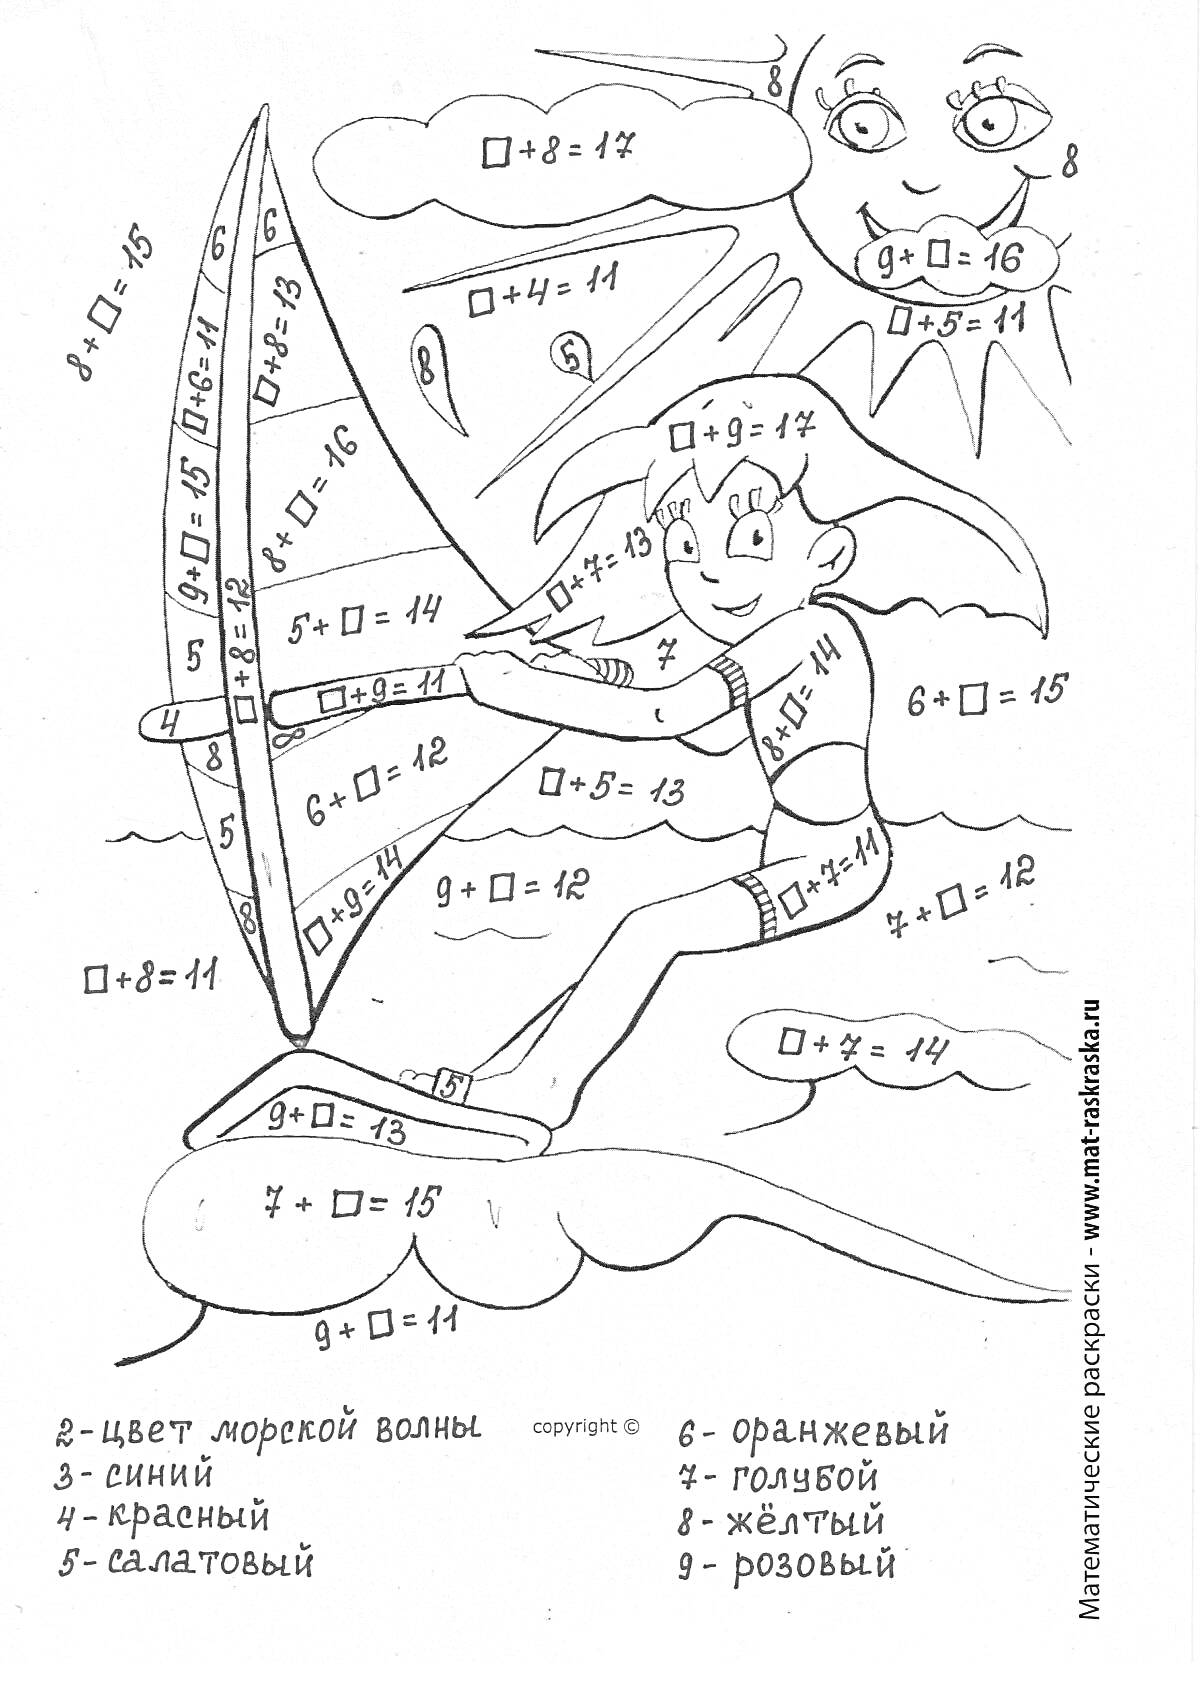 Раскраска Мальчик на доске для серфинга на волнах с задачами на сложение и вычитание в пределах 10